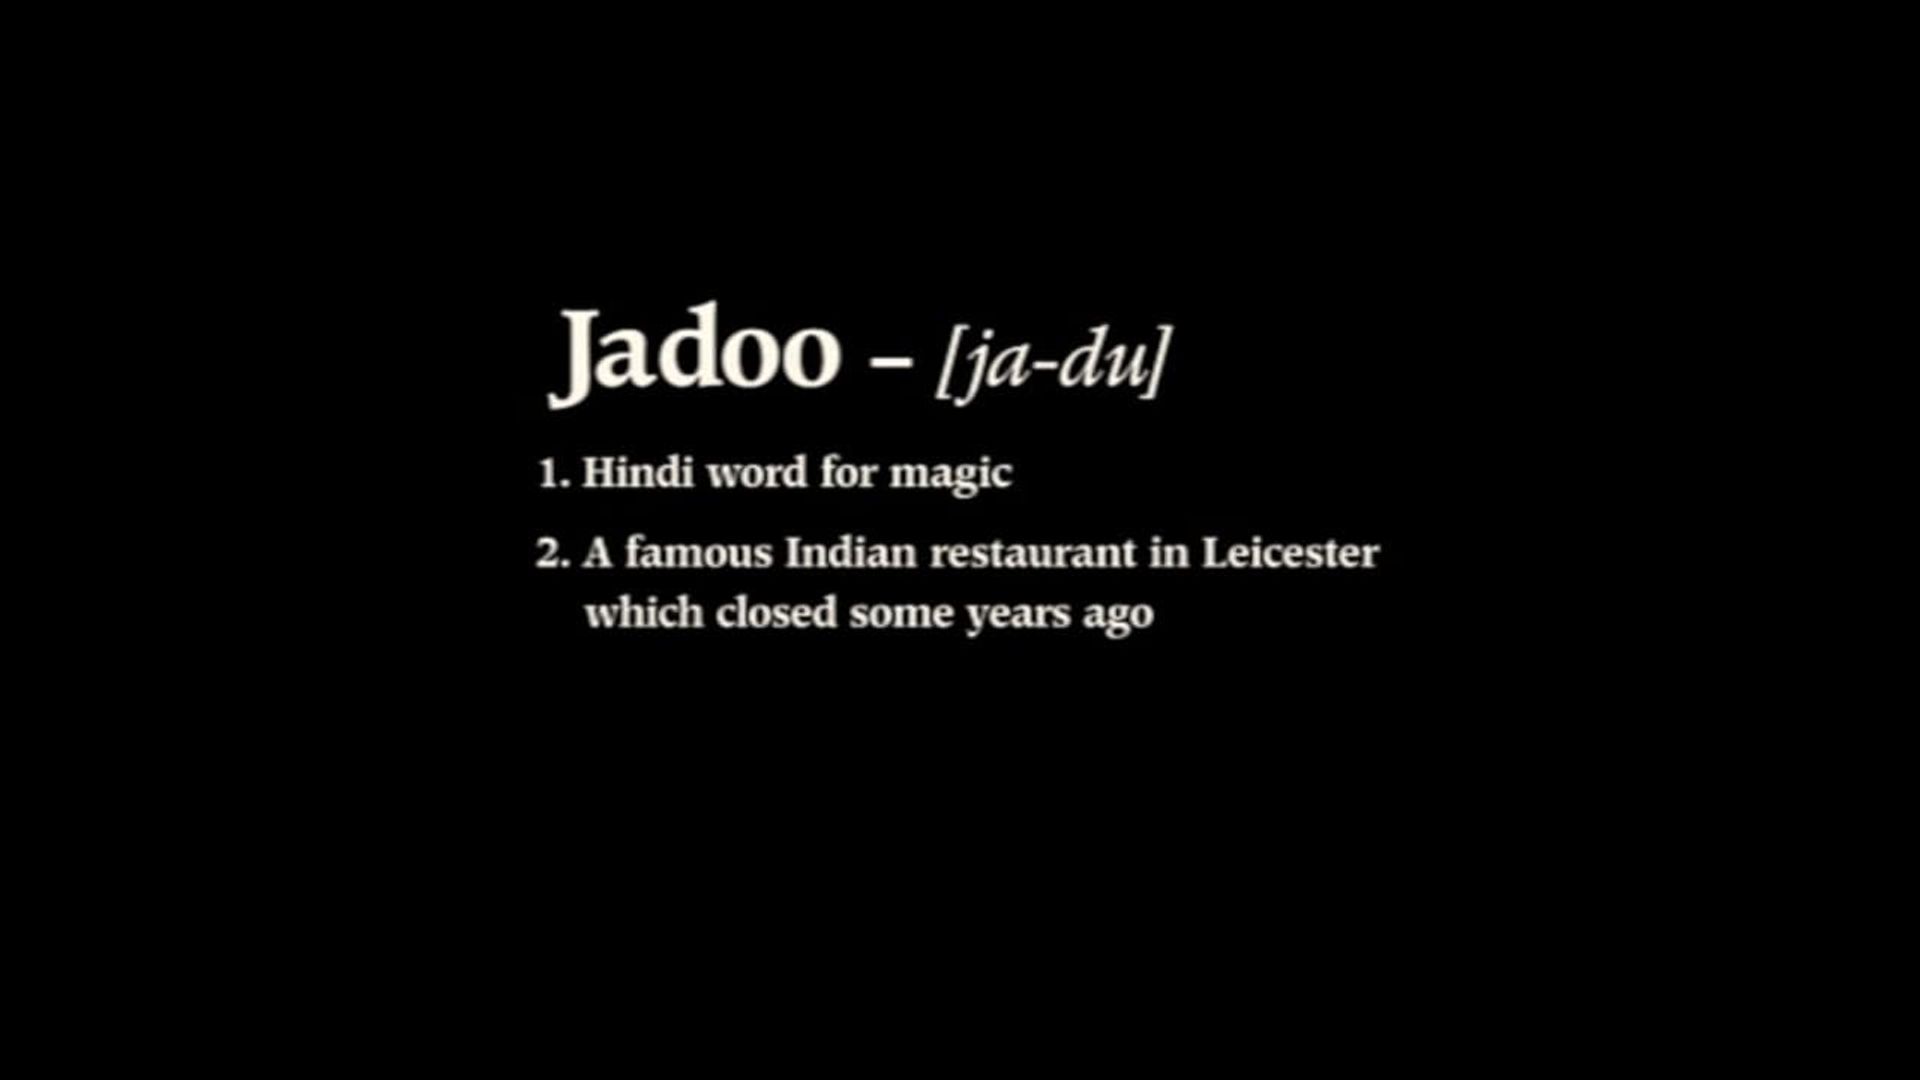 Jadoo background